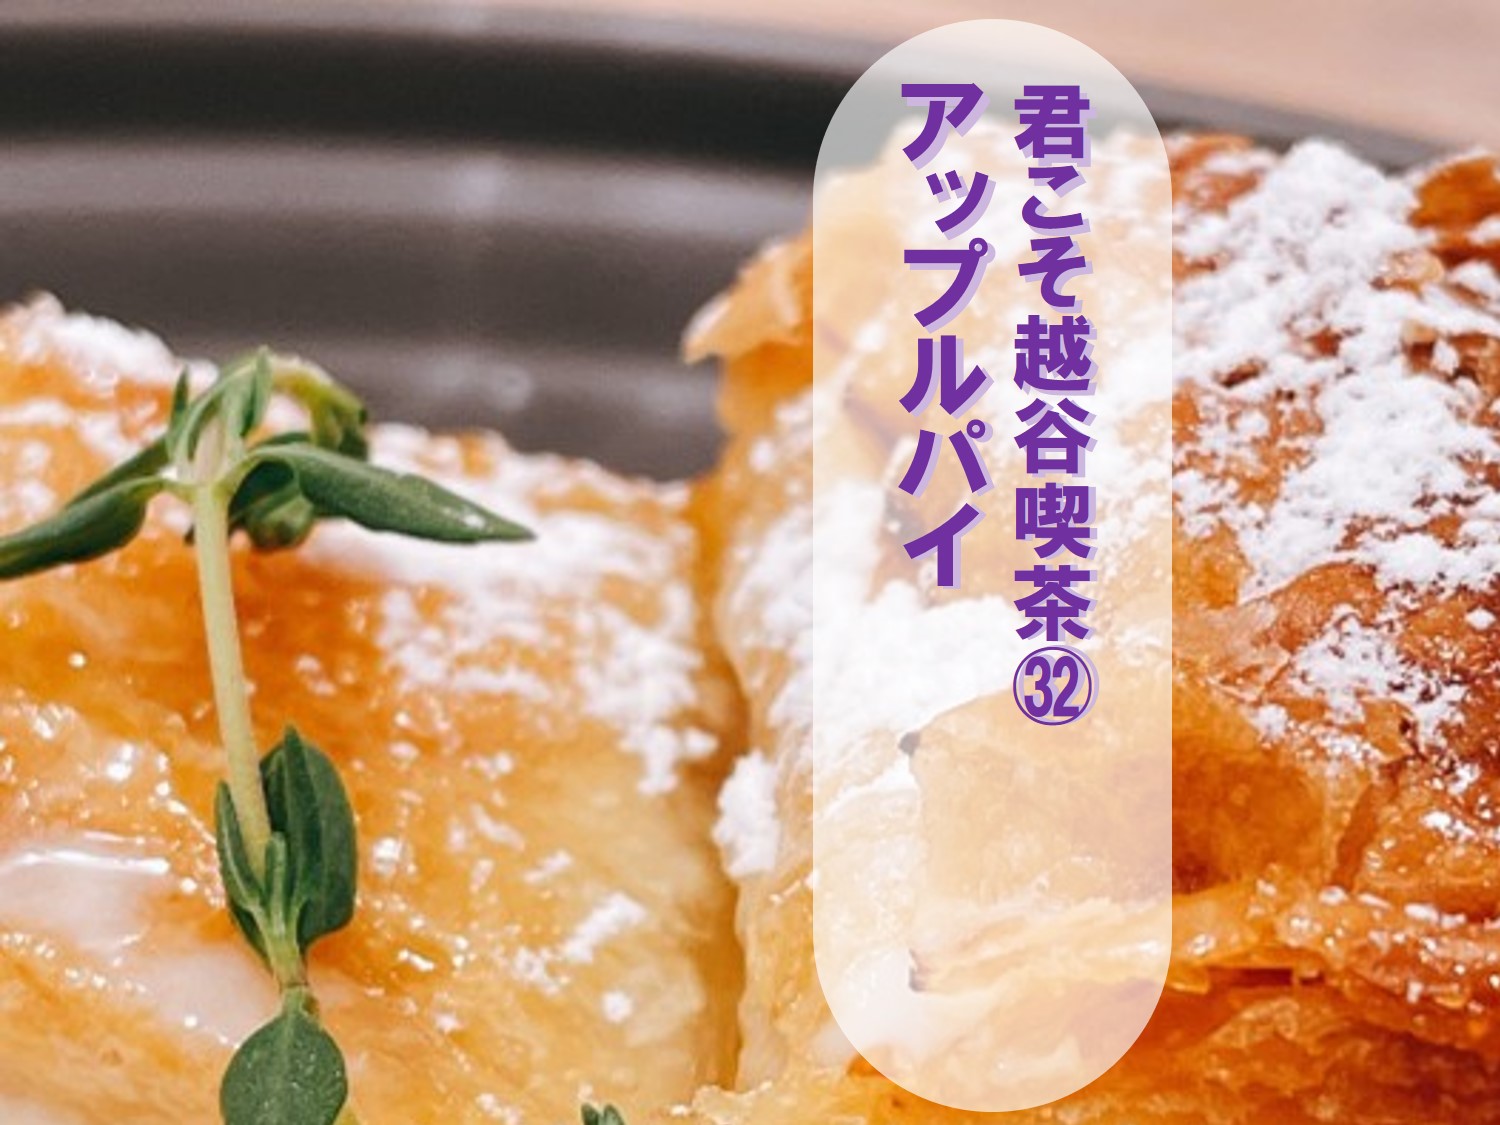 アップルパイをCafe&Dining ARISTAR越谷店で【君こそ越谷喫茶...